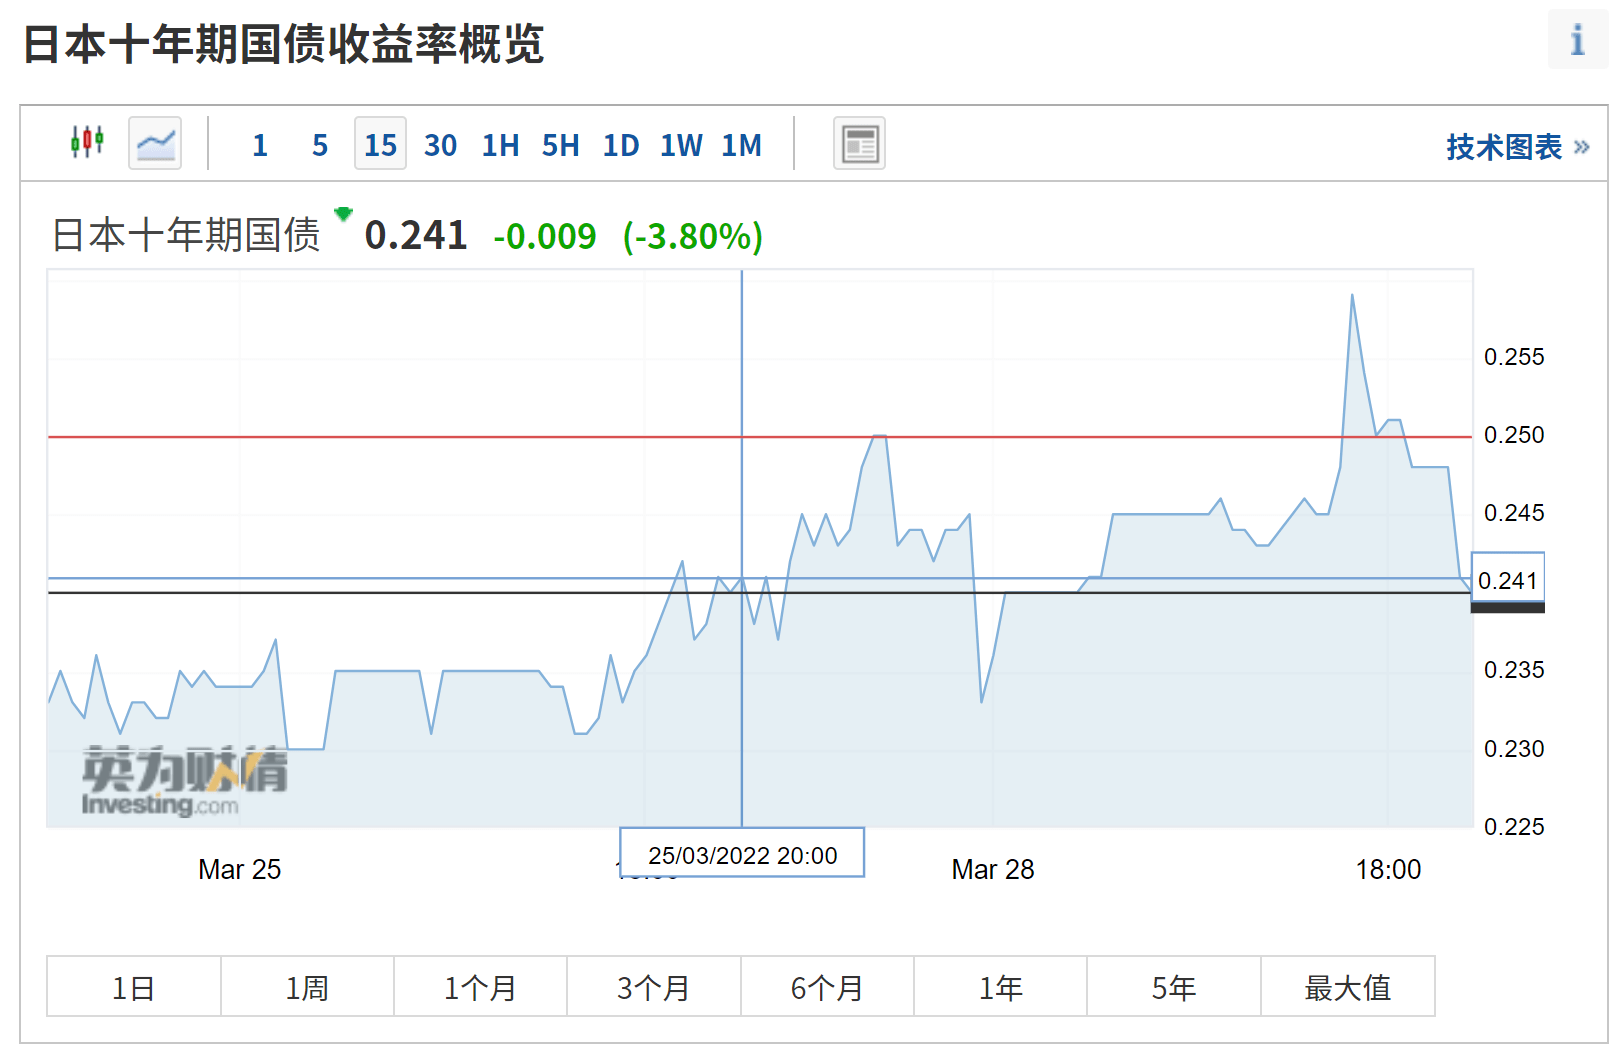 国债收益率逼近上限,日本央行再度出手干预!日元汇率跌至6年低位